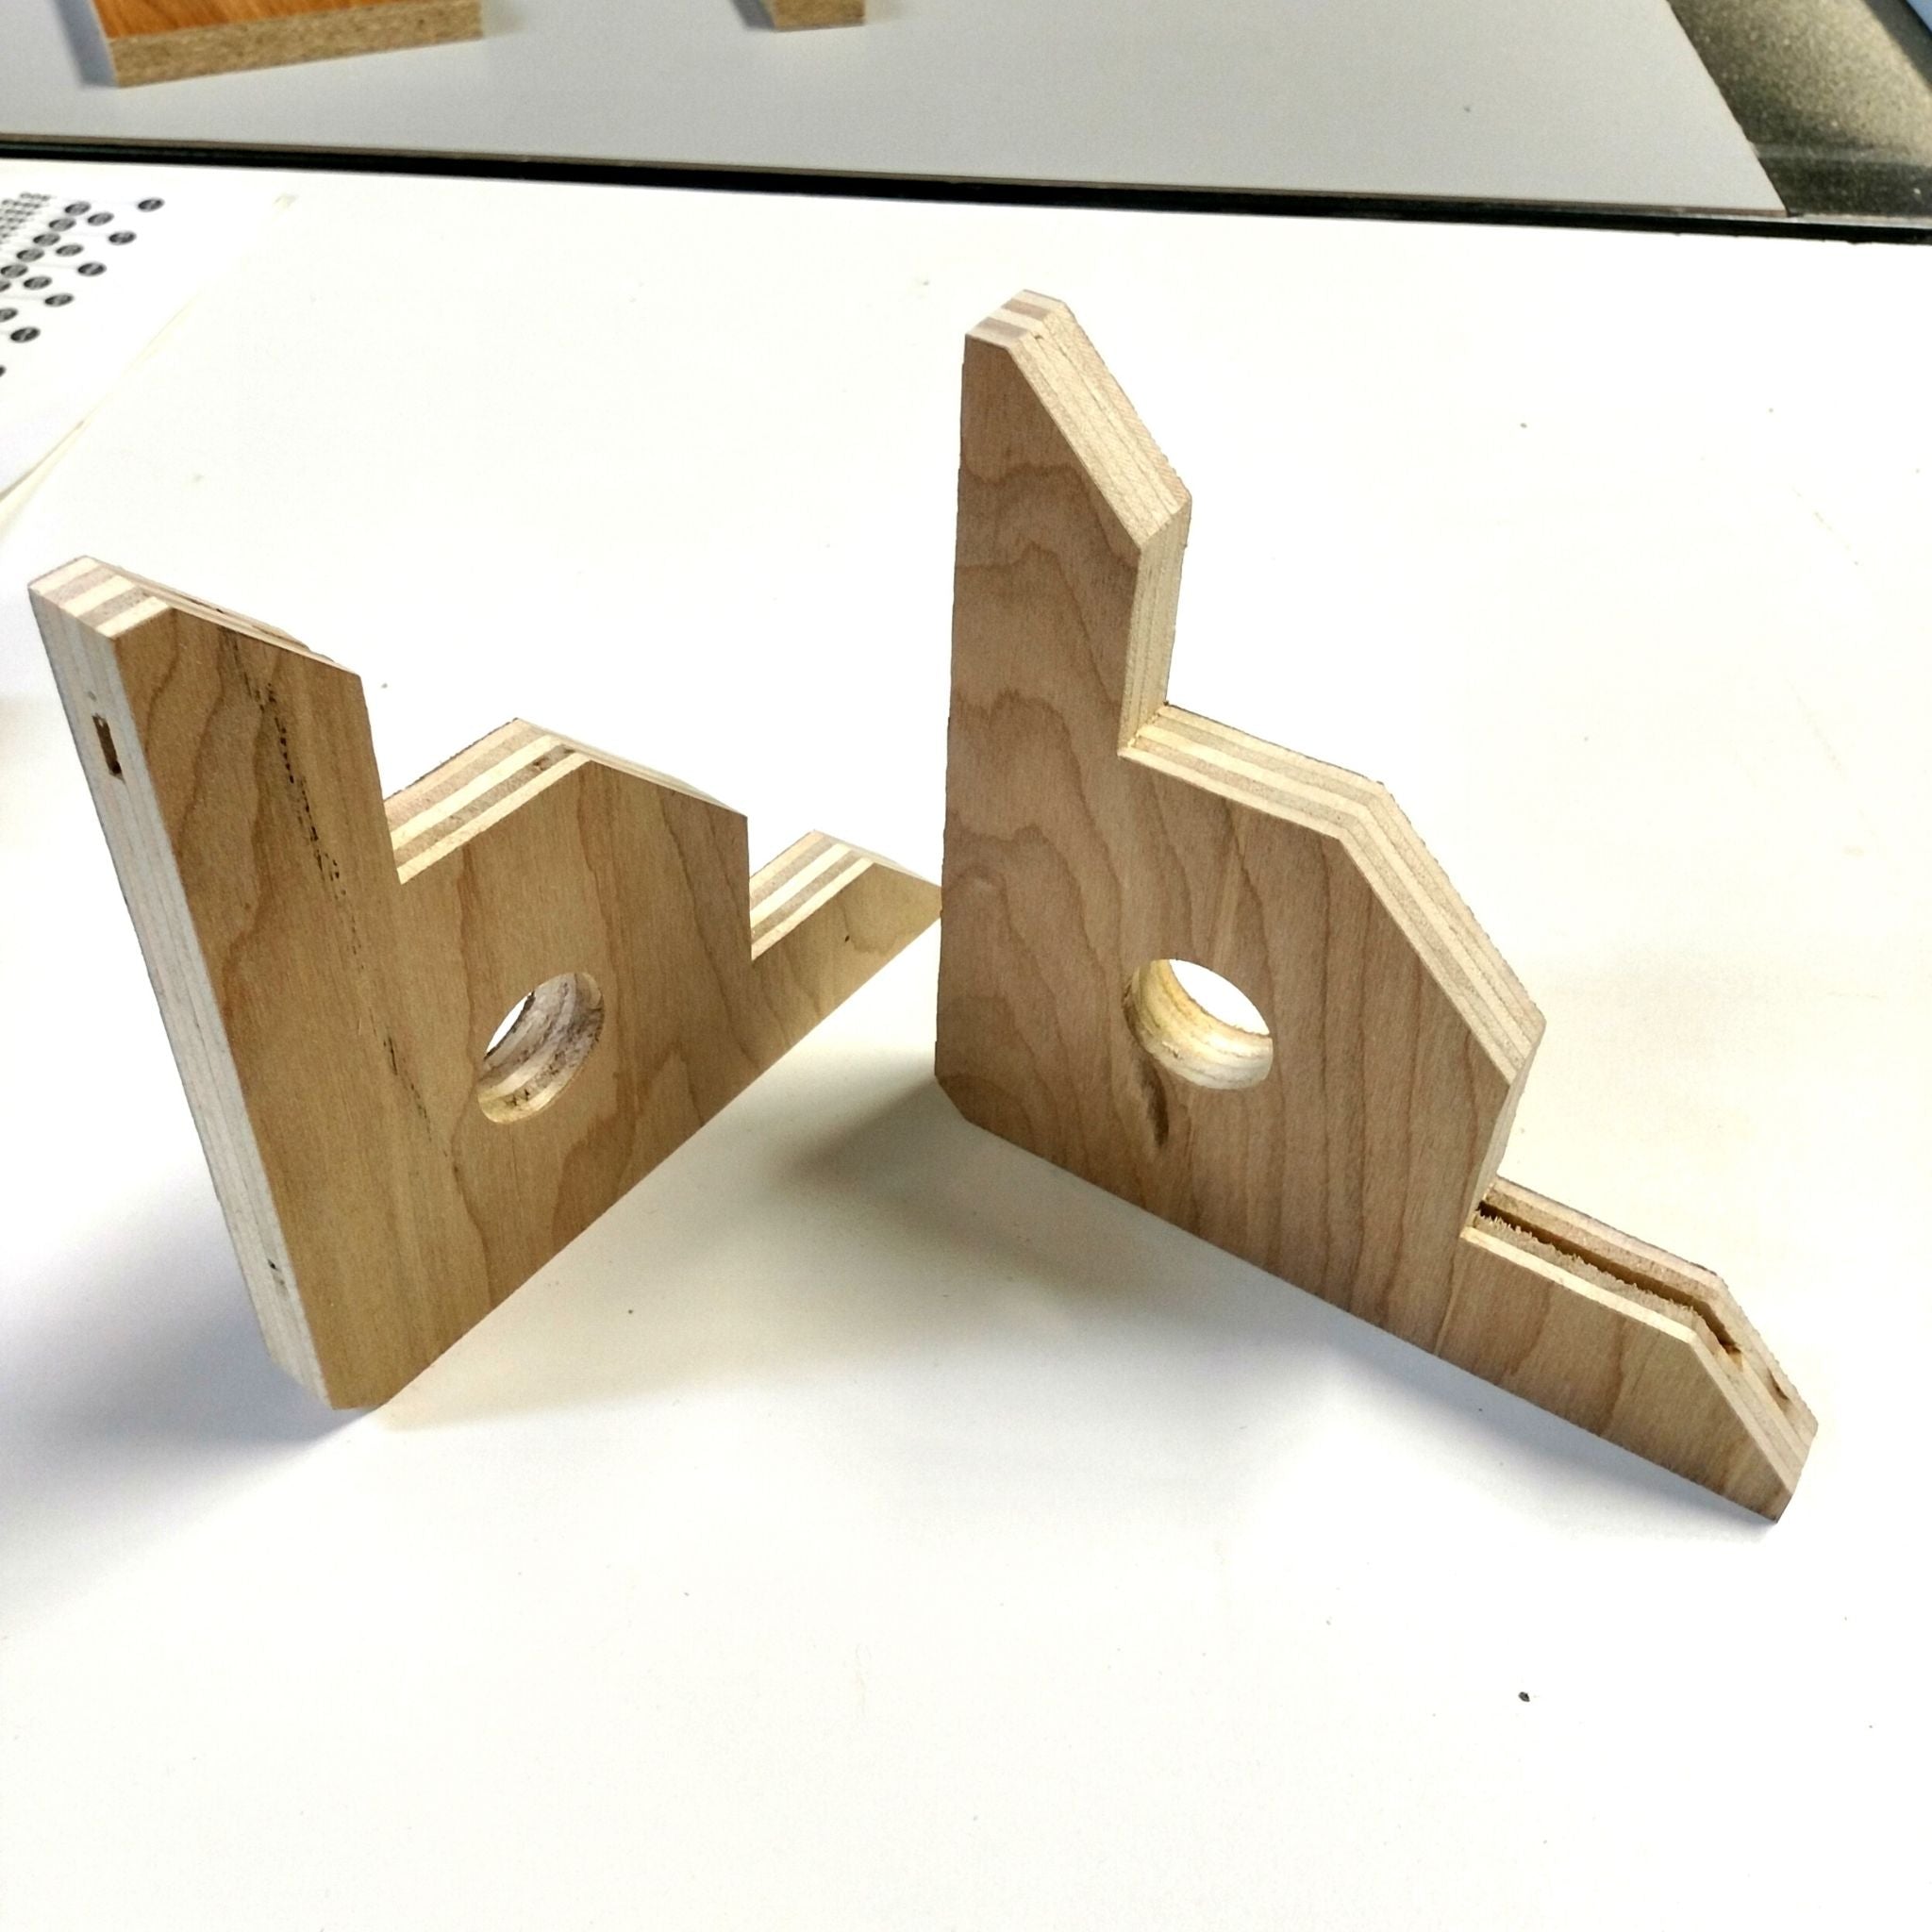 Easy Corner Clamping Jig! #workshop #diyhacks #diy #woodworking